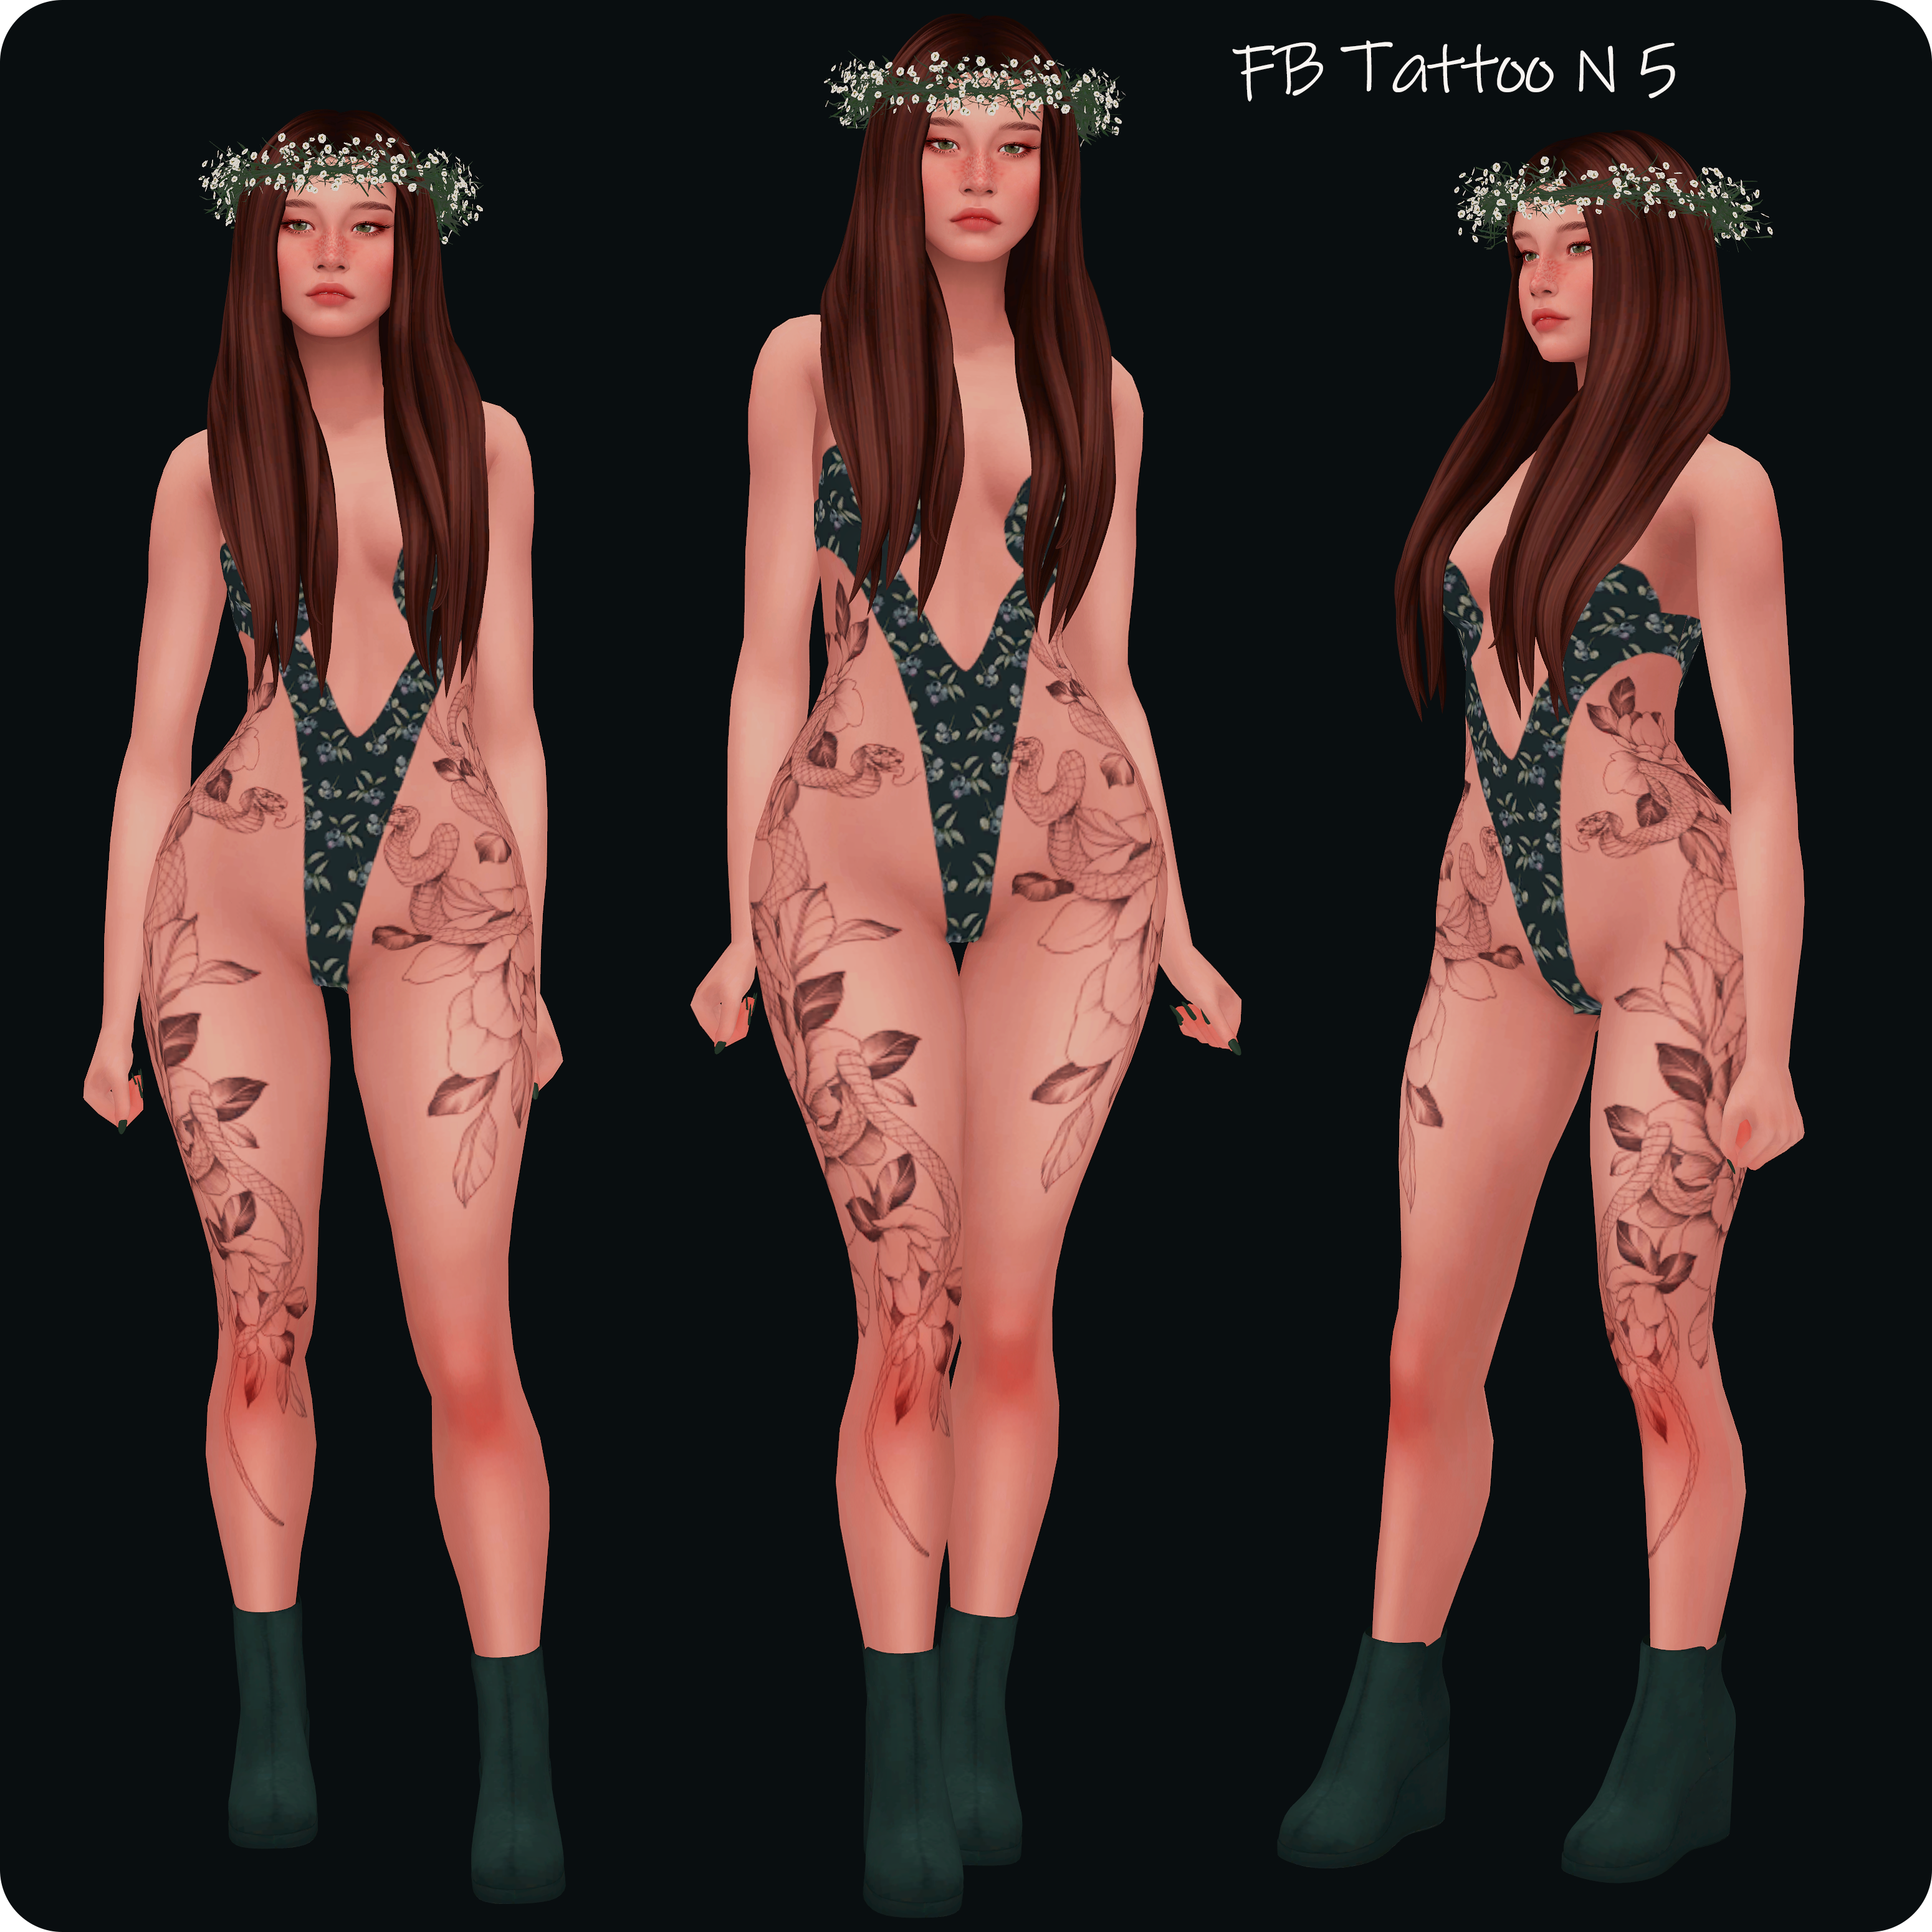 Full Body Tattoo N5 project avatar